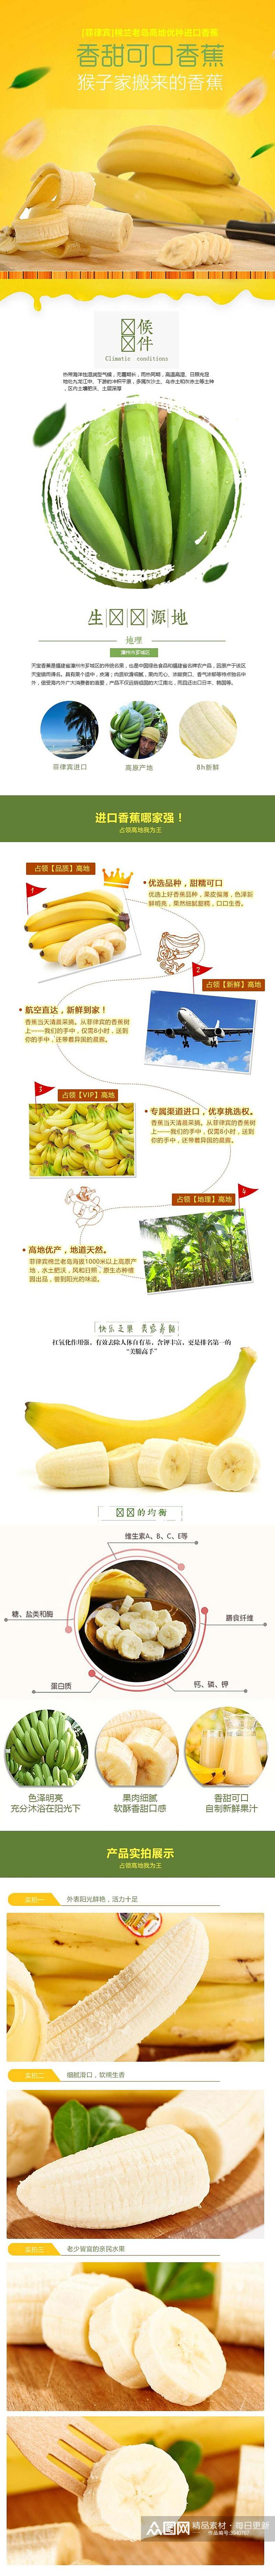 菲律宾进口香蕉水果手机版淘宝详情页素材